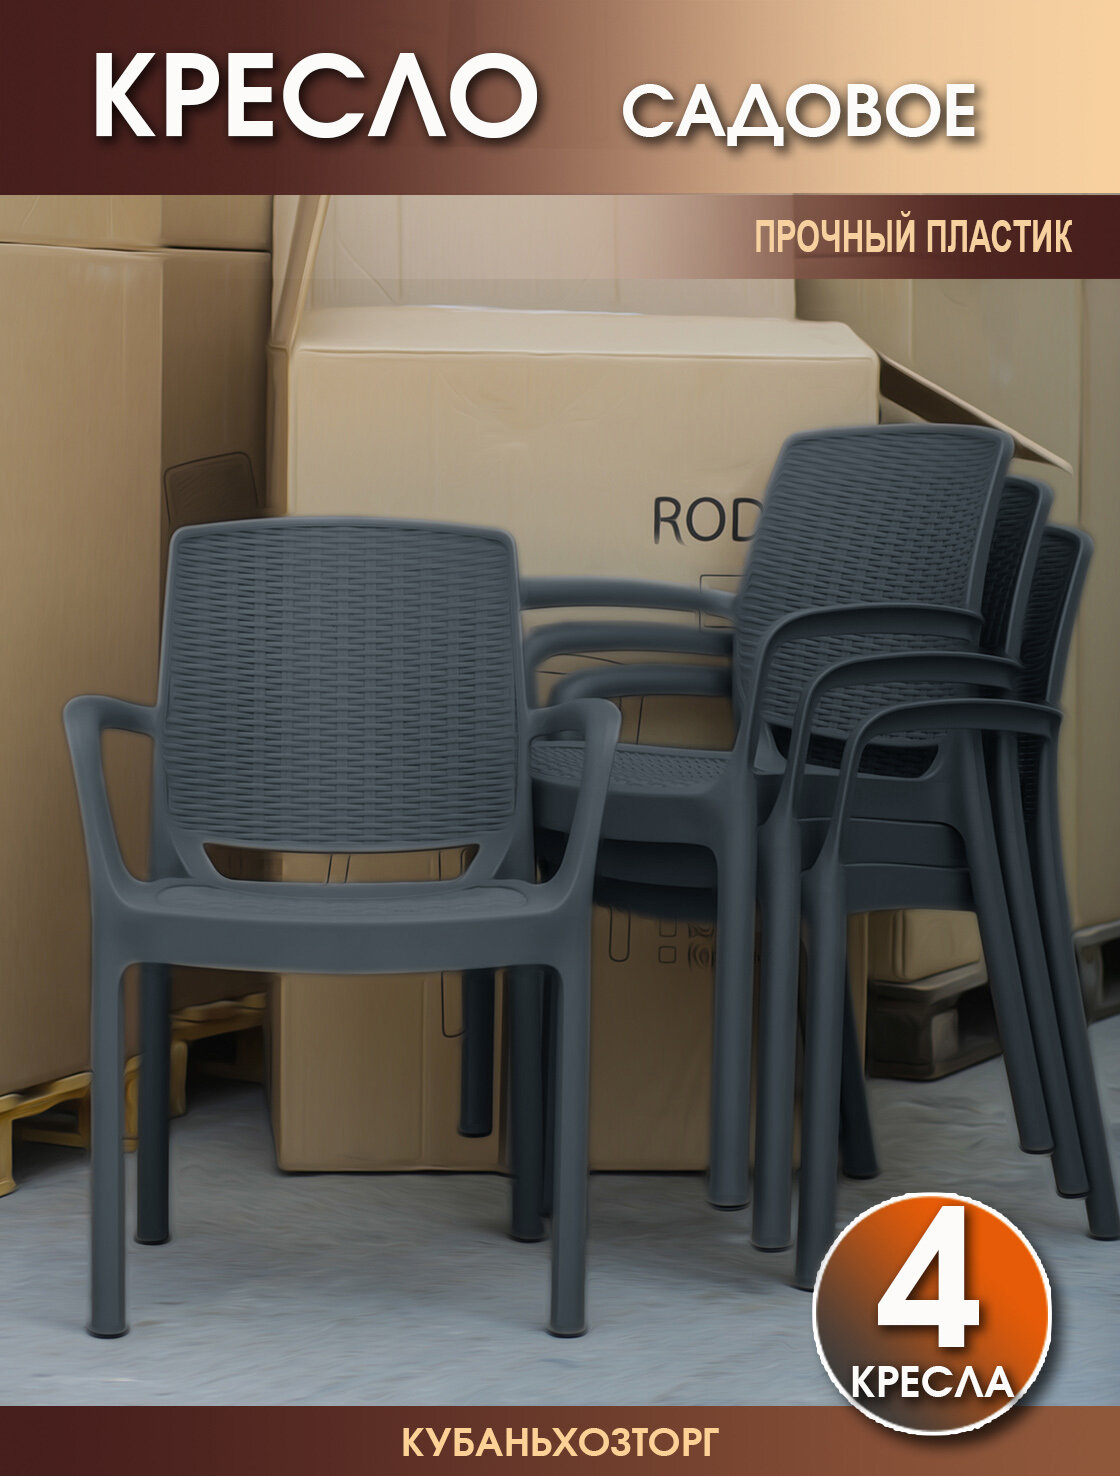 Кресло пластиковое RODOS комплект из 4-х стульев для сада и дачи. Темно-серый